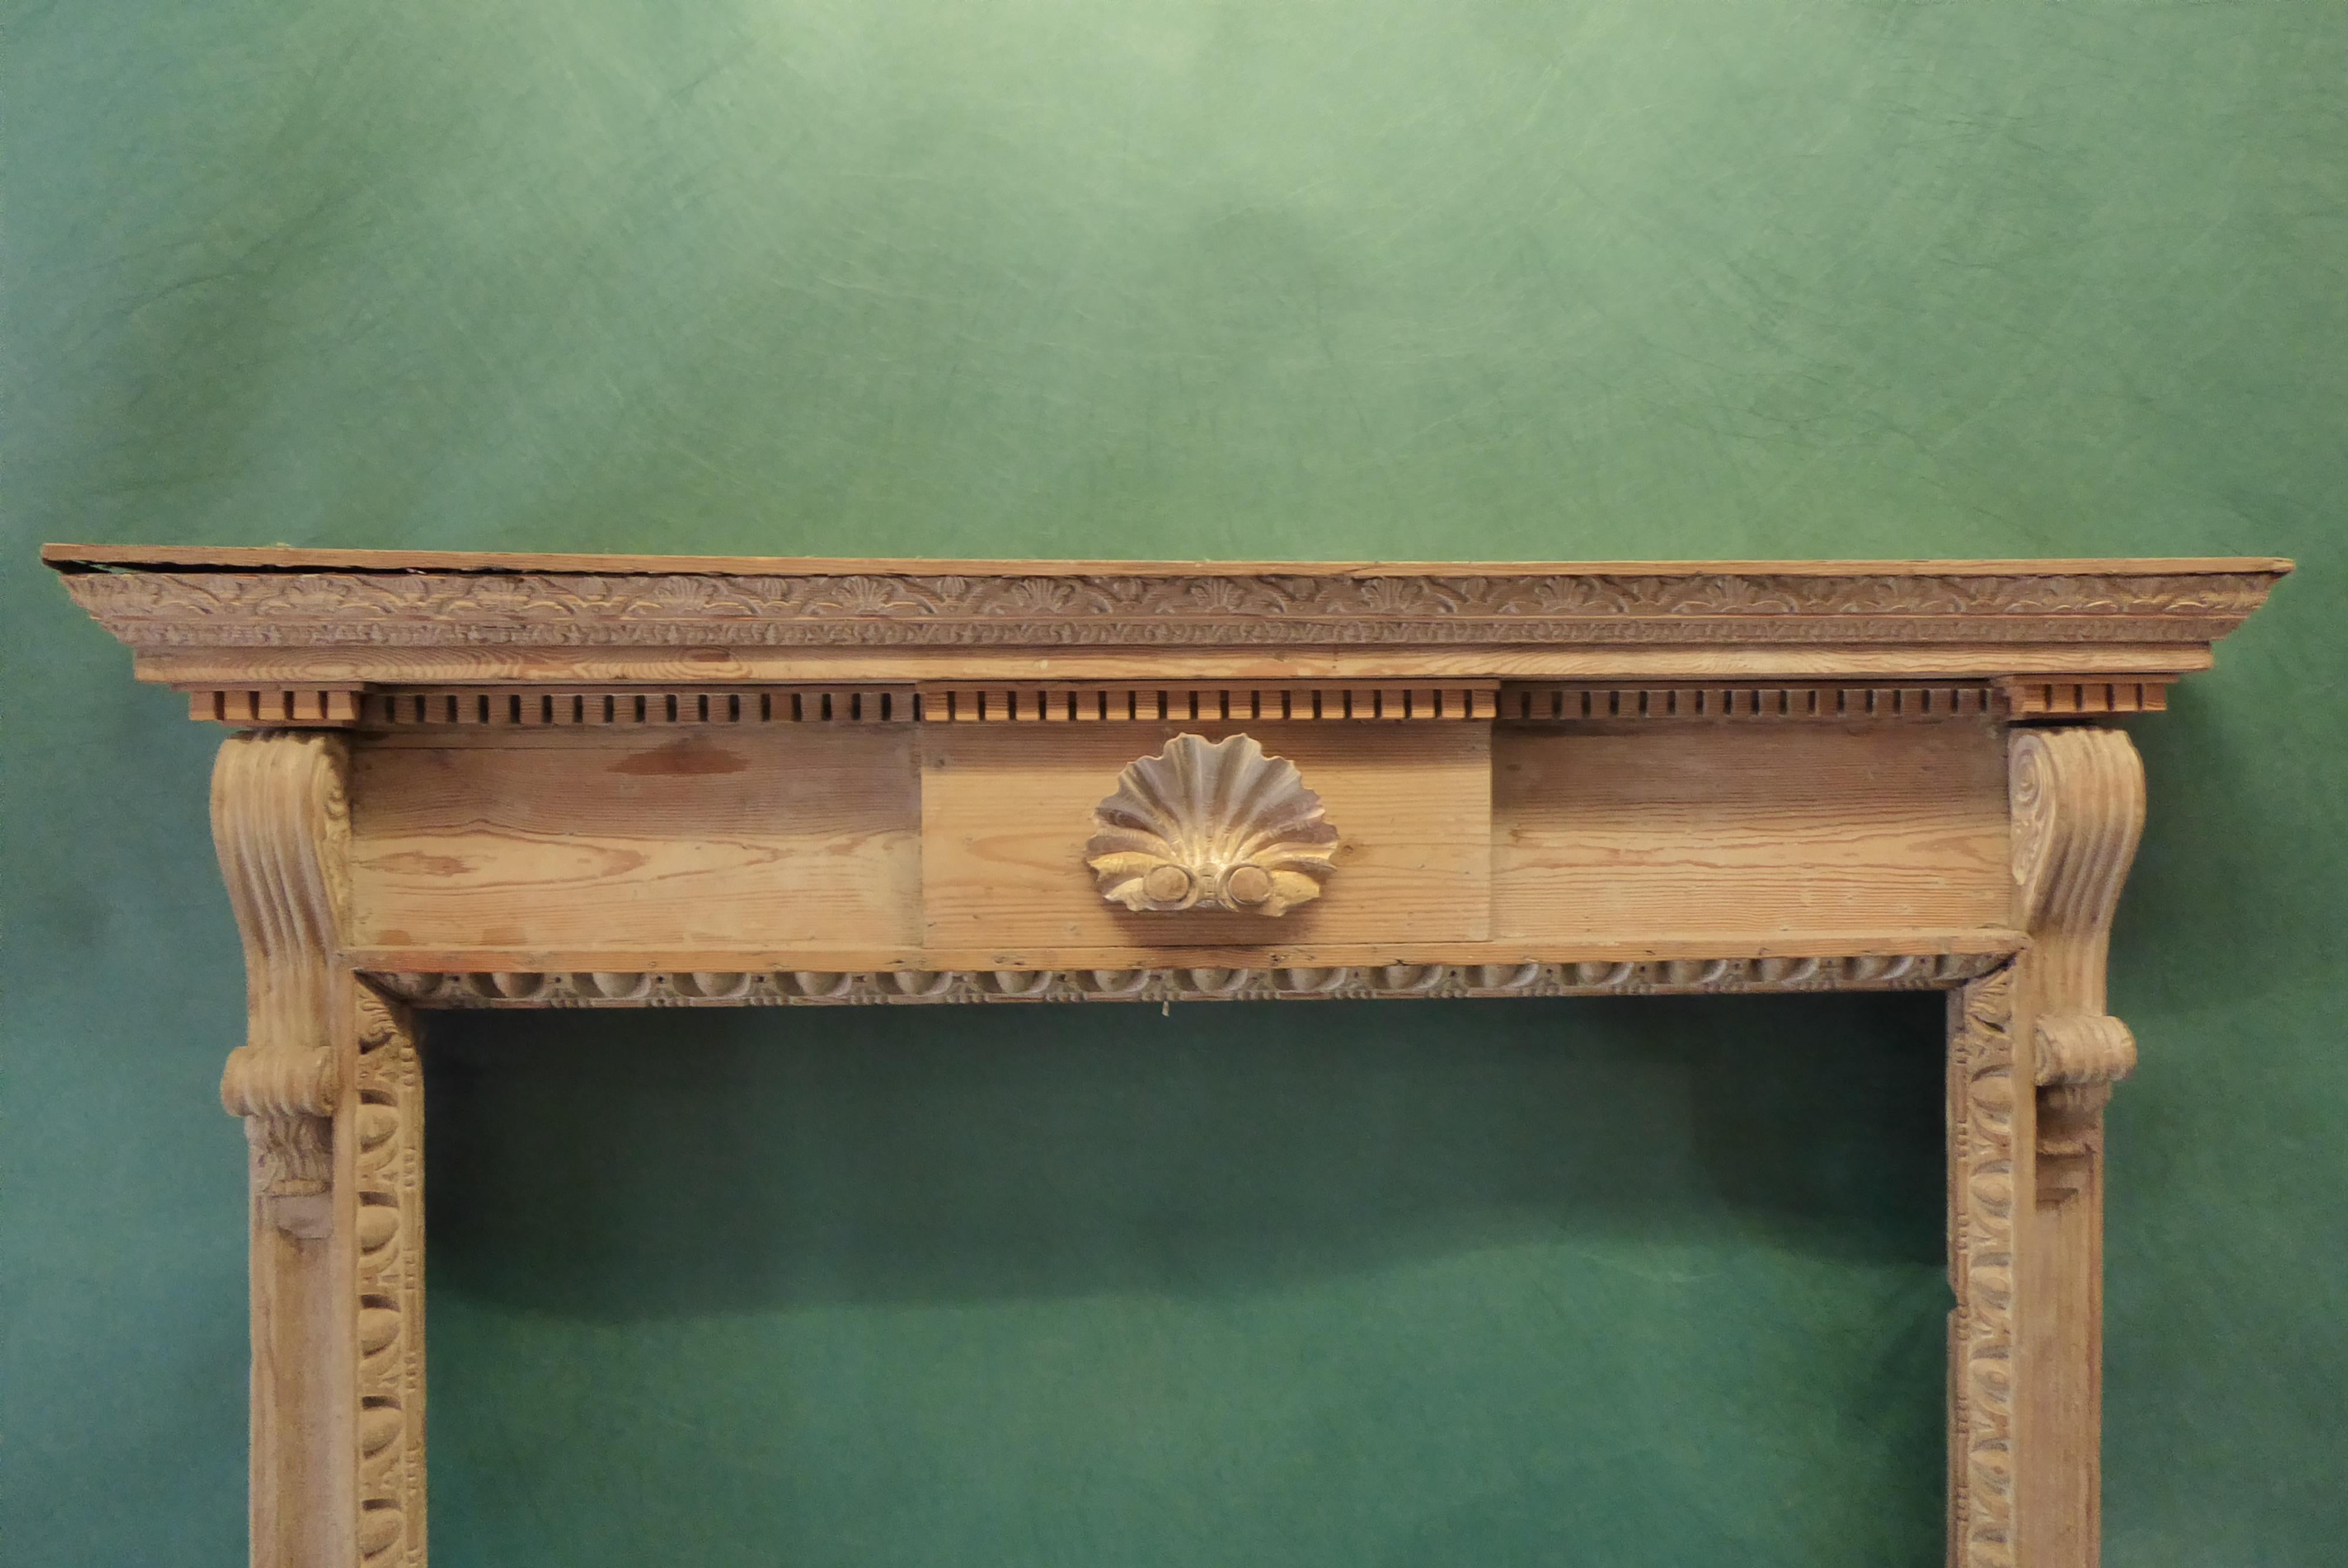 Cette cheminée ou manteau de cheminée en bois de pin sculpté de style George II. Le dessous de l'étagère est rehaussé de motifs floraux et d'étagères sculptés. La plaque de poitrine avec une coquille joliment sculptée. Les pieds sont ornés d'oves et